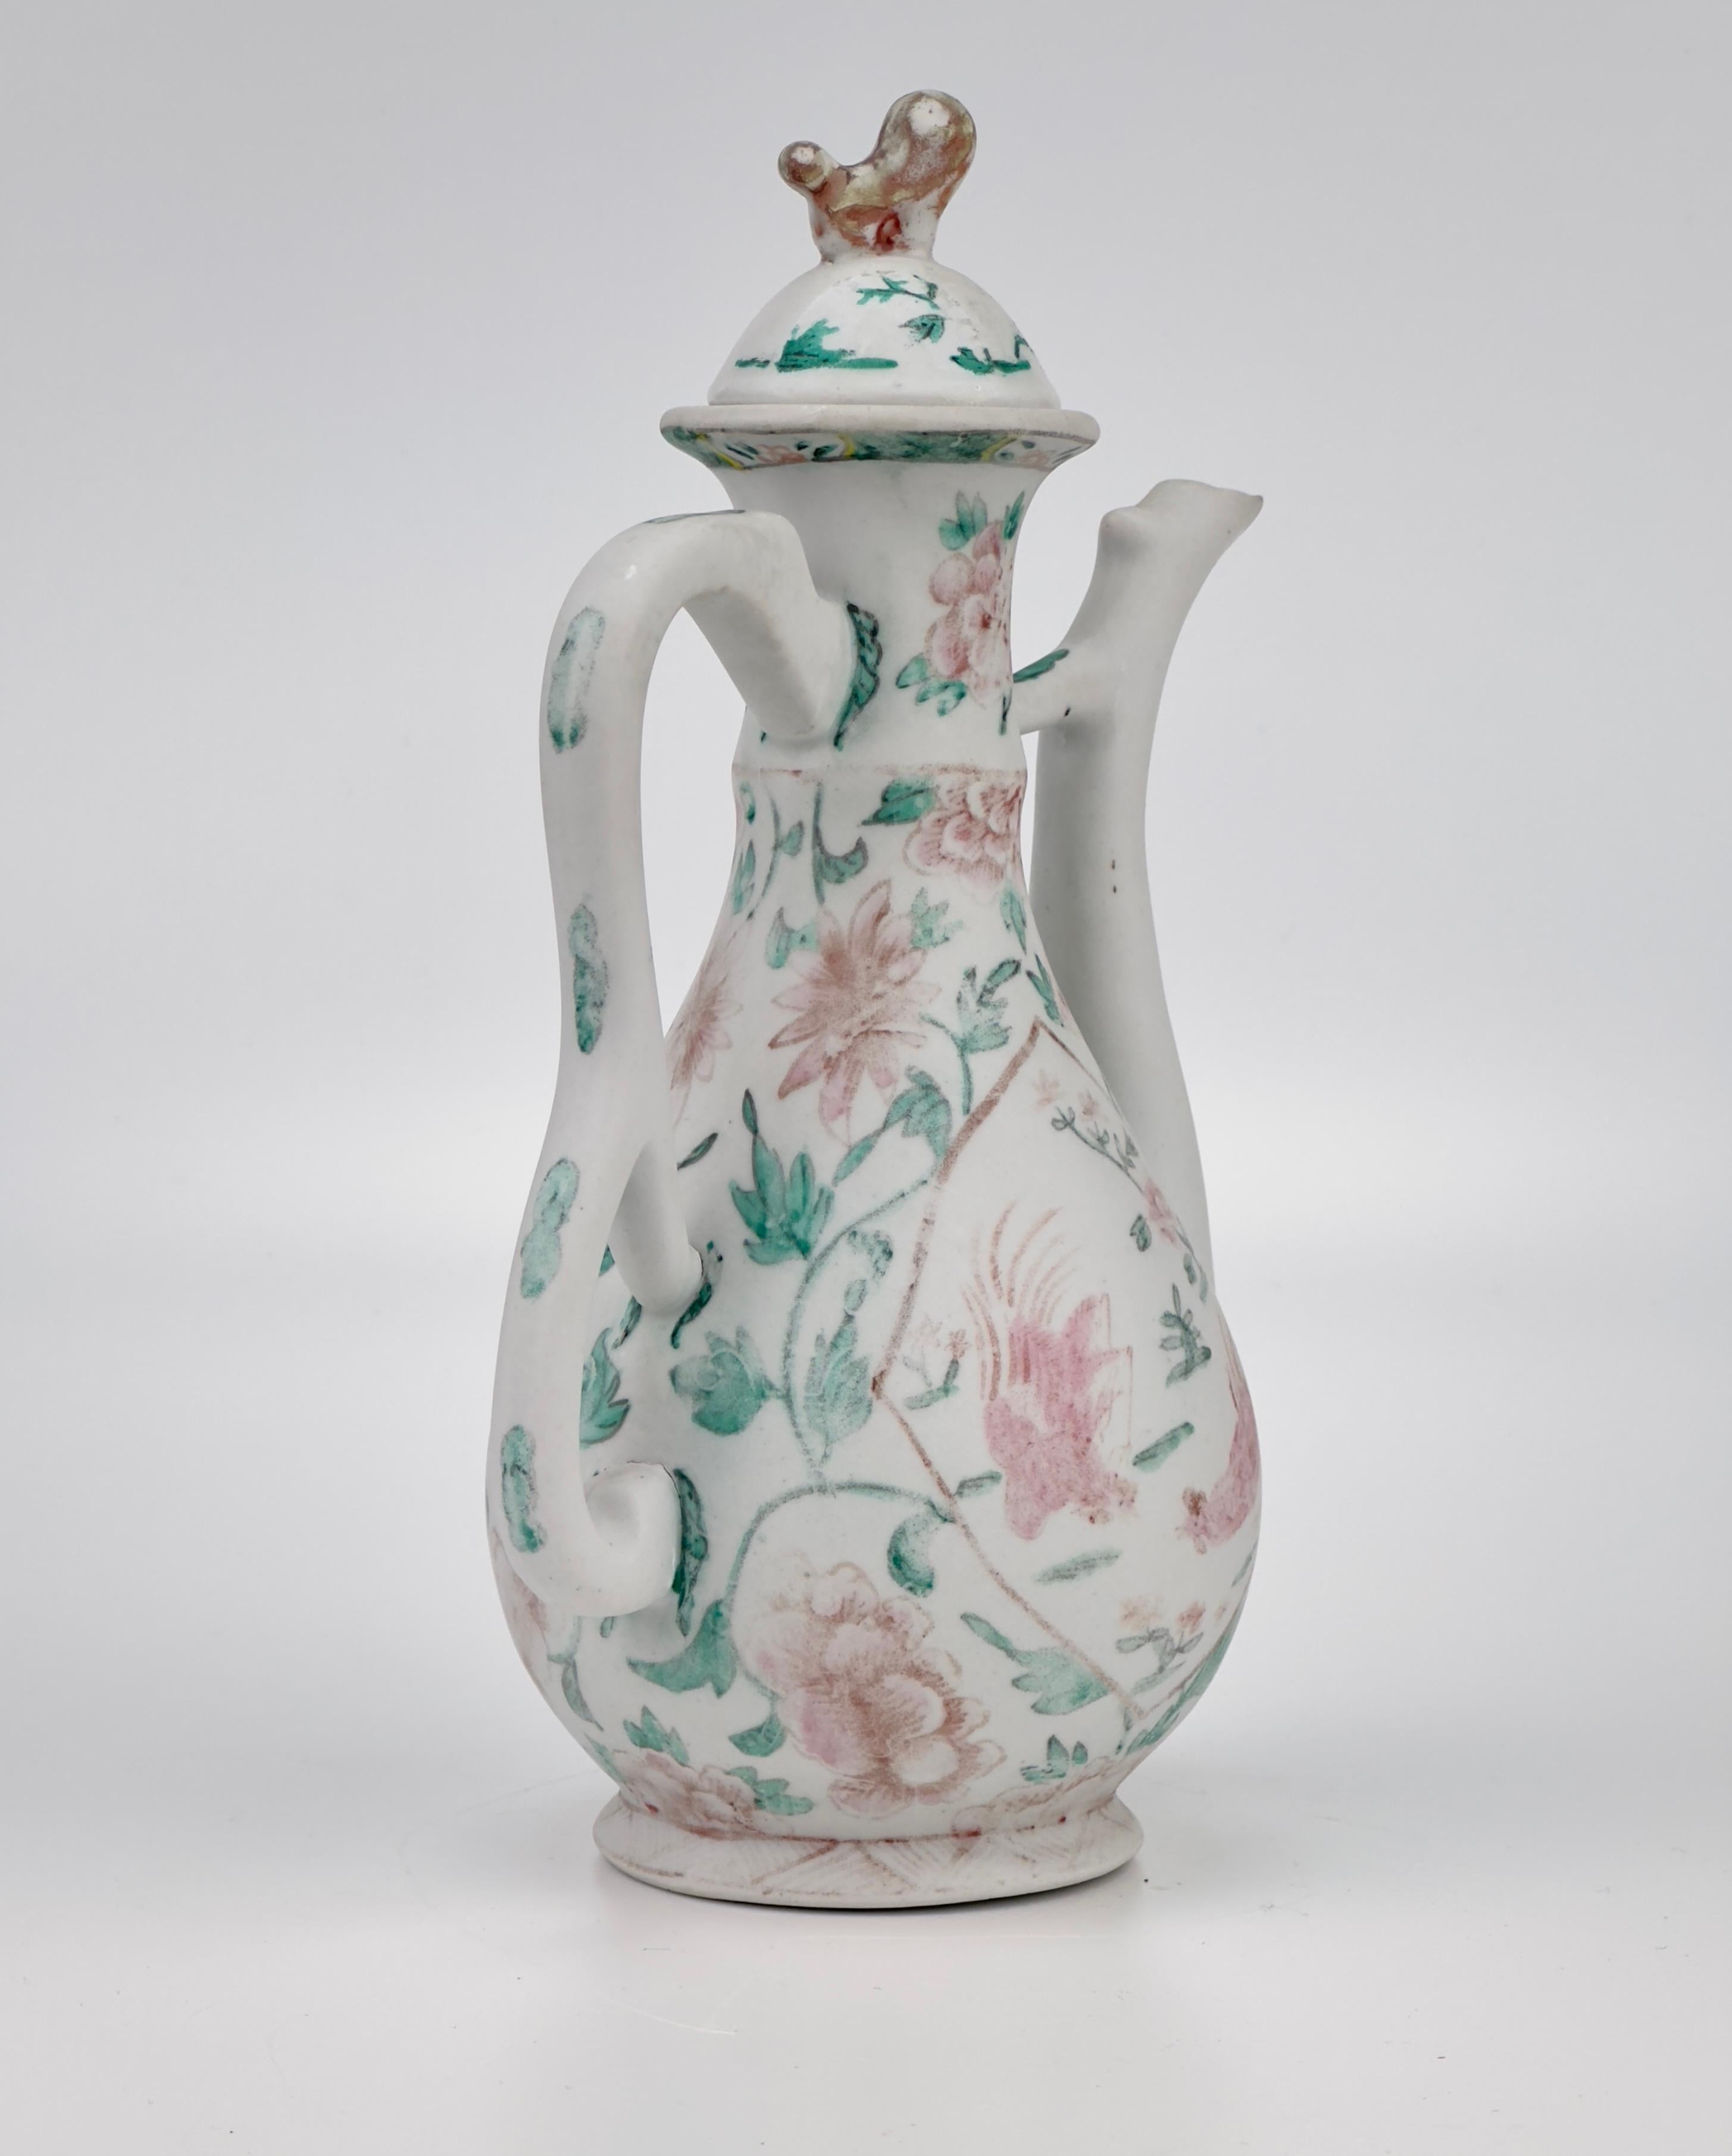 Belle aiguière en céramique de la dynastie Qing en forme de familie rose/verte peinte 